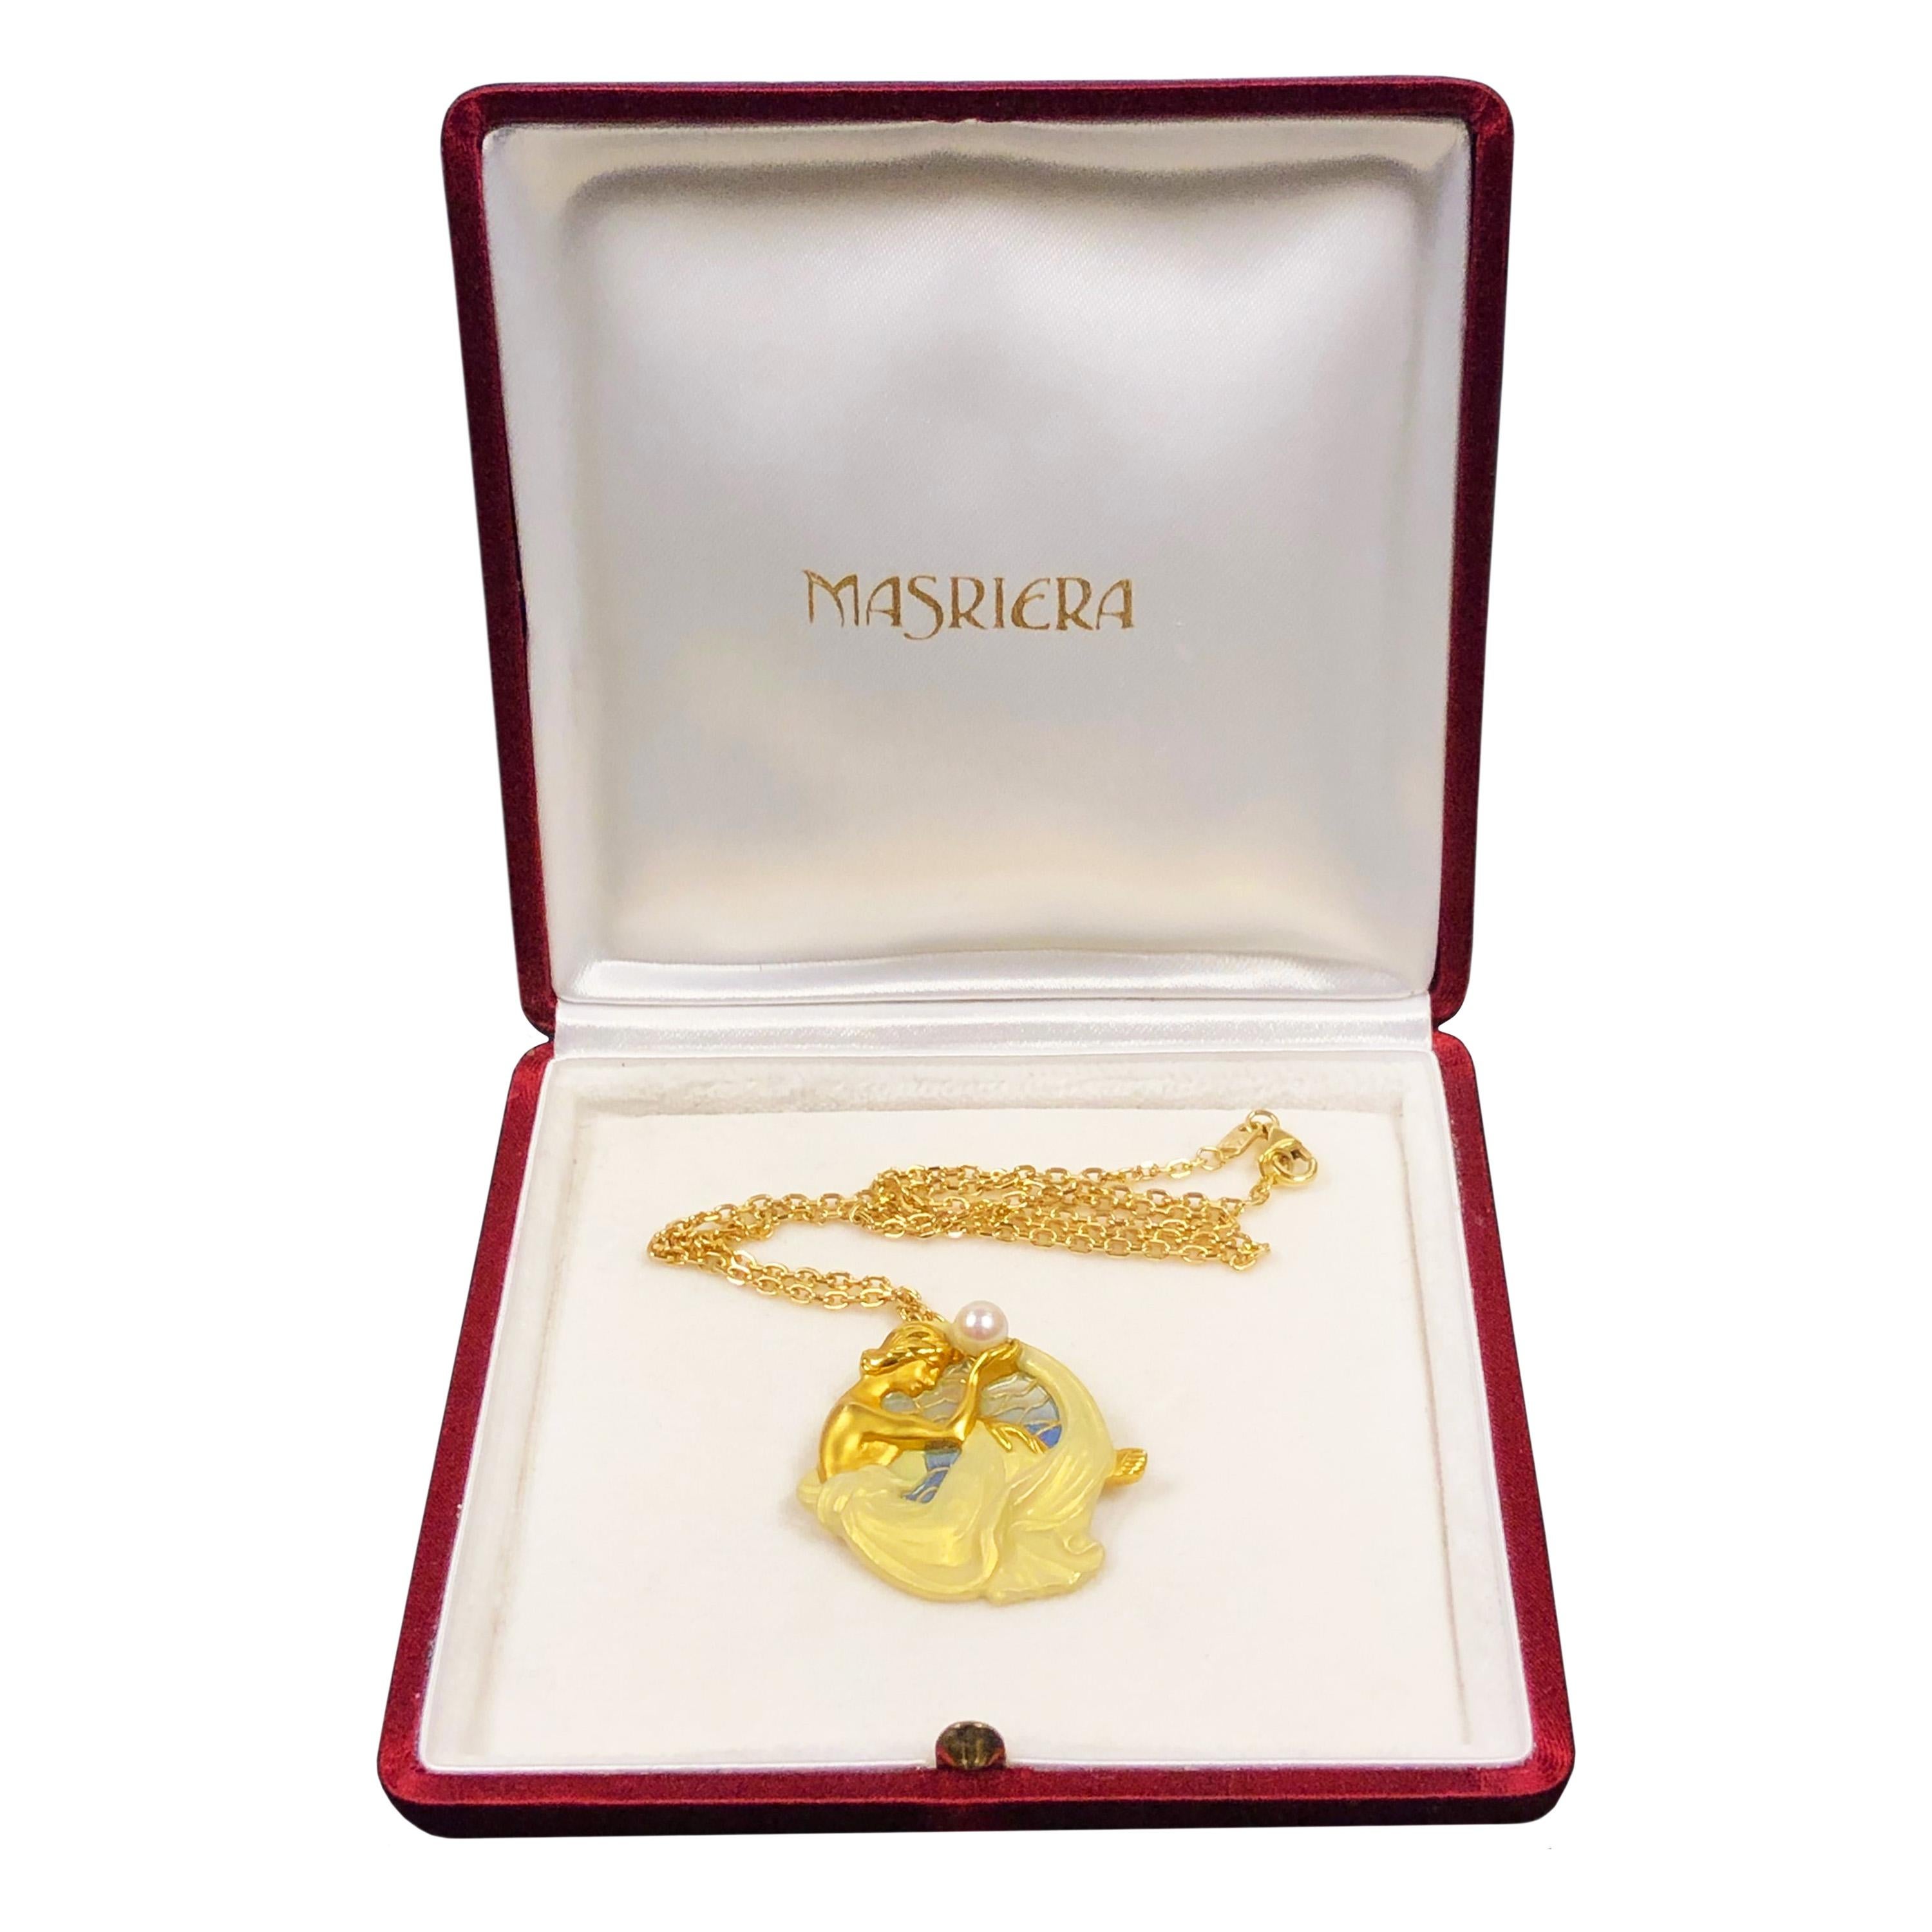 Women's Masriera Gold and Enamel Art Nouveau Pendant Brooch Necklace